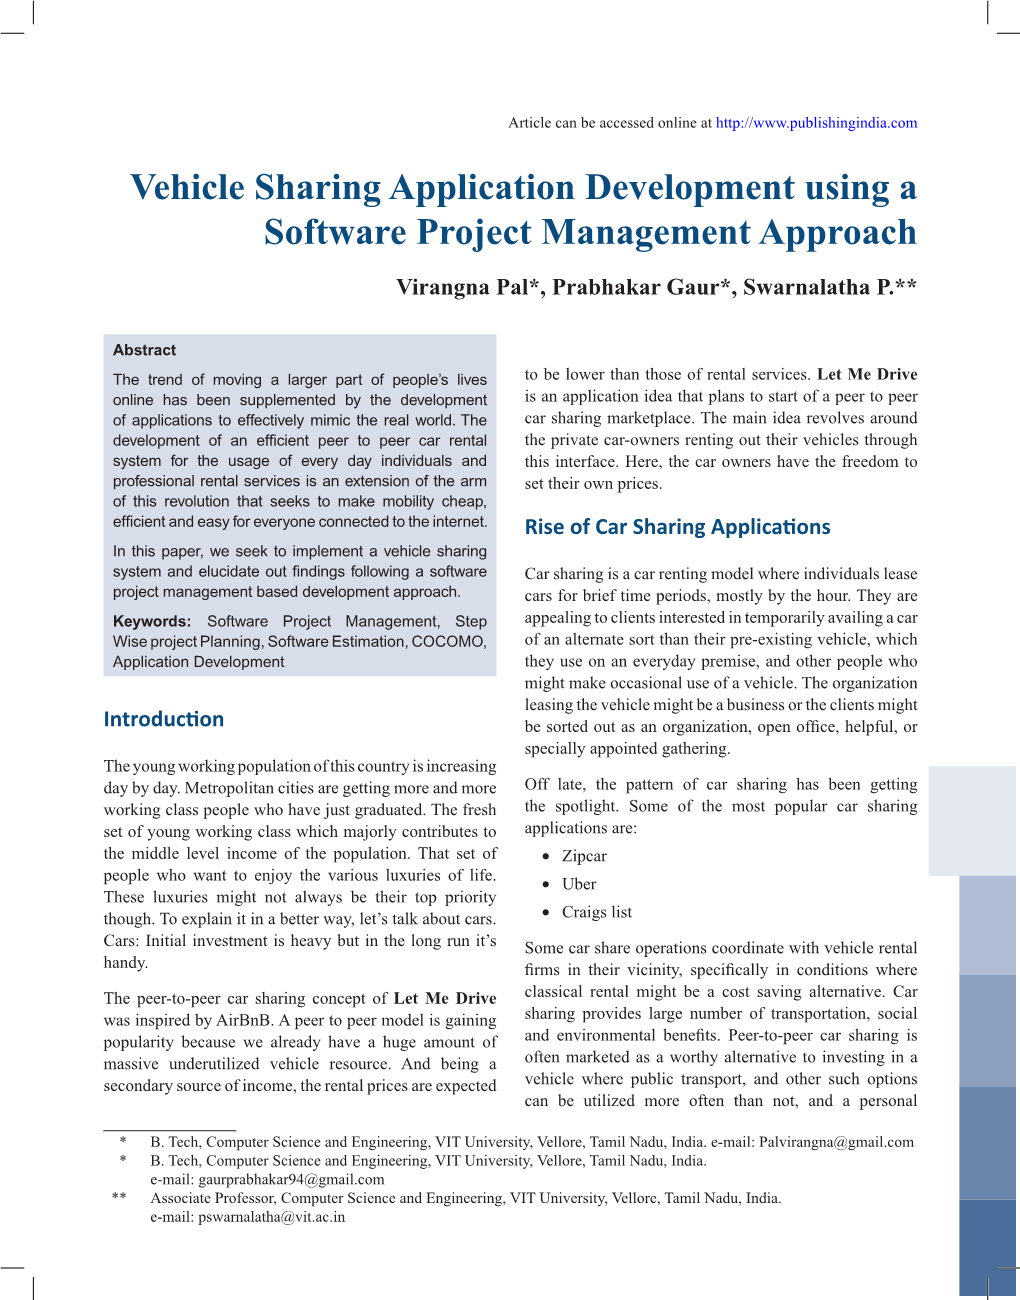 Vehicle Sharing Application Development Using a Software Project Management Approach Virangna Pal*, Prabhakar Gaur*, Swarnalatha P.**